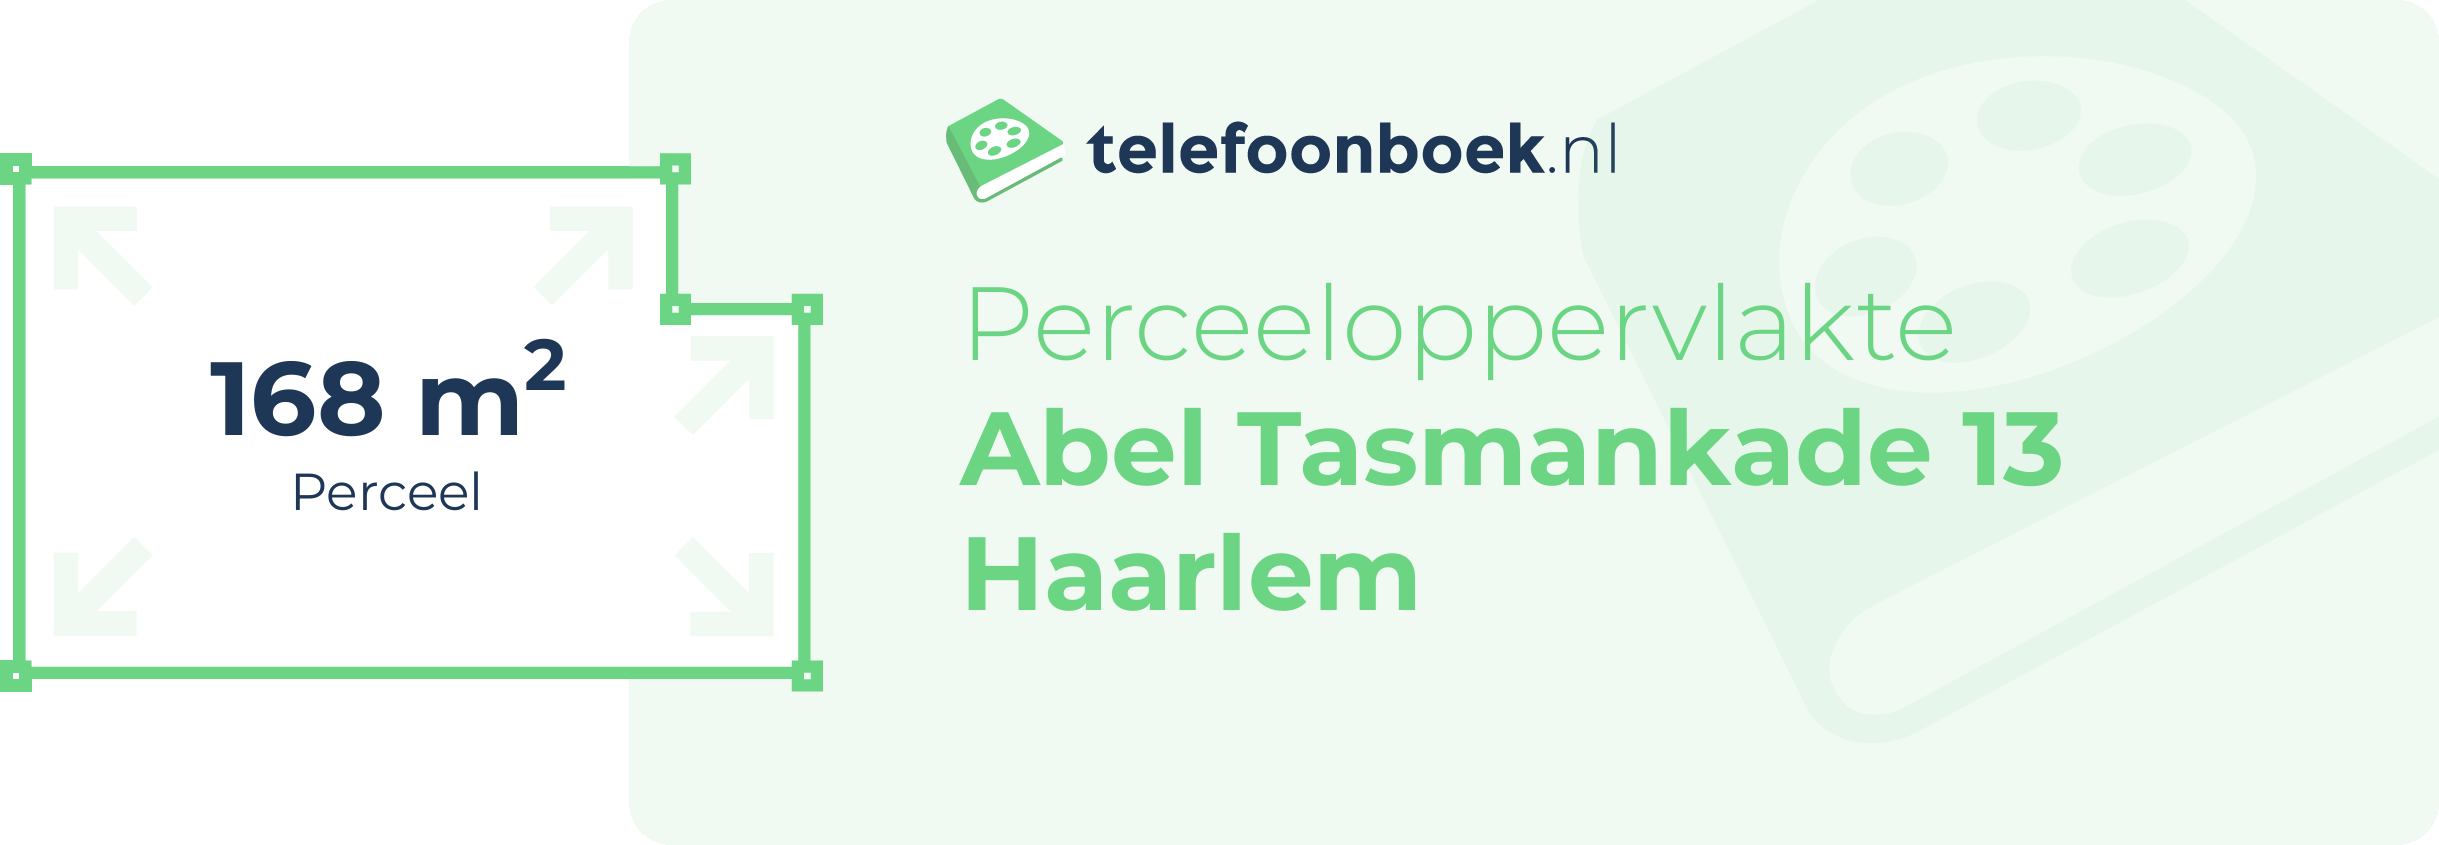 Perceeloppervlakte Abel Tasmankade 13 Haarlem